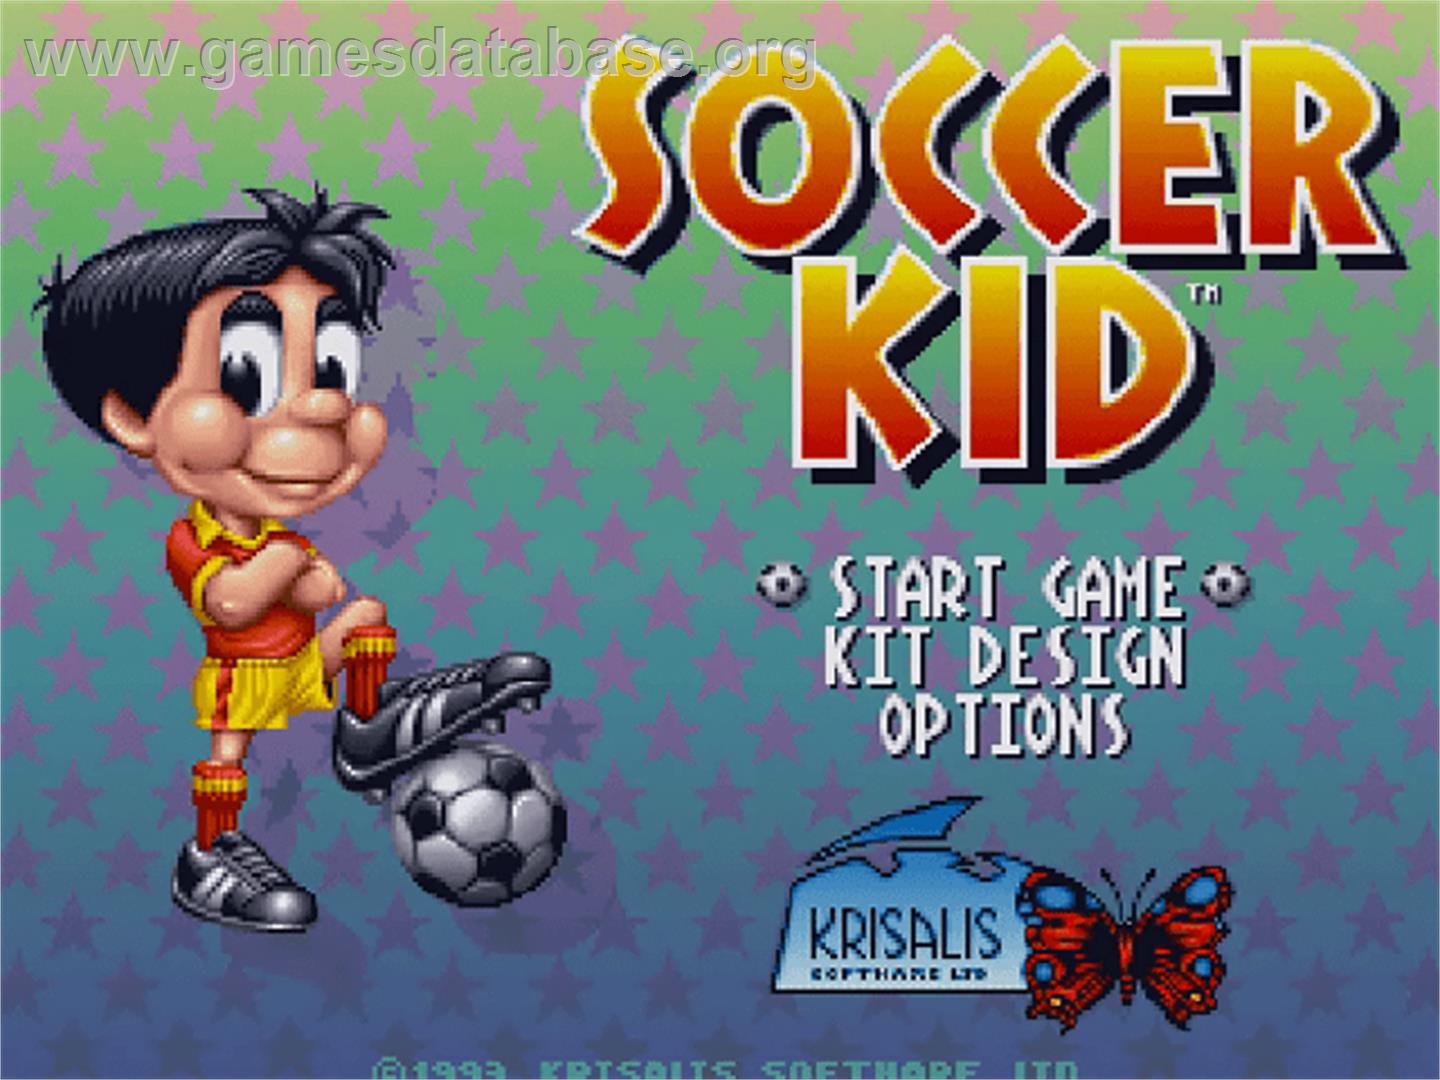 Soccer Kid - Commodore Amiga CD32 - Artwork - Title Screen